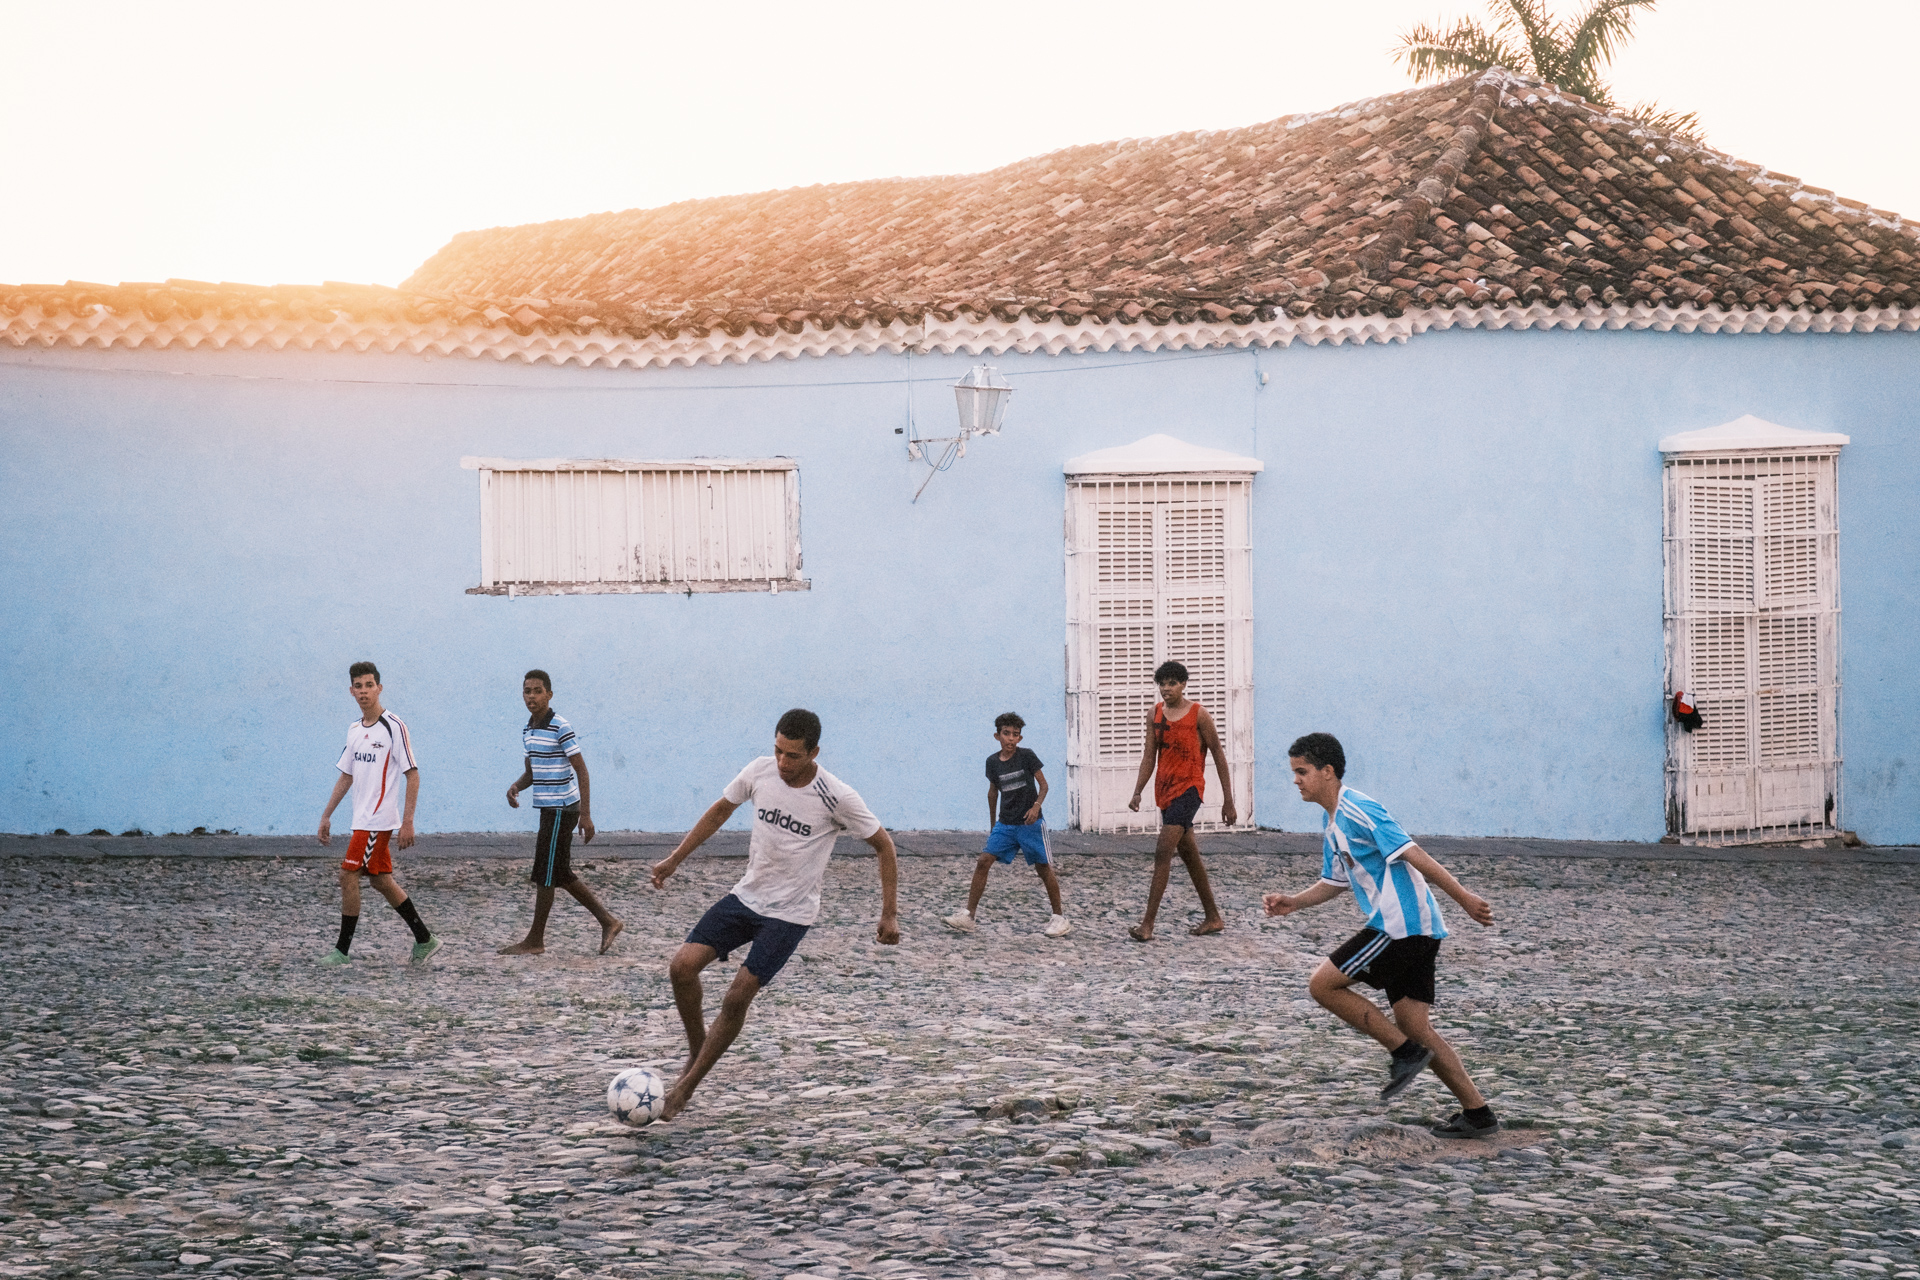 Kids spielen Fußball in Trinidad.